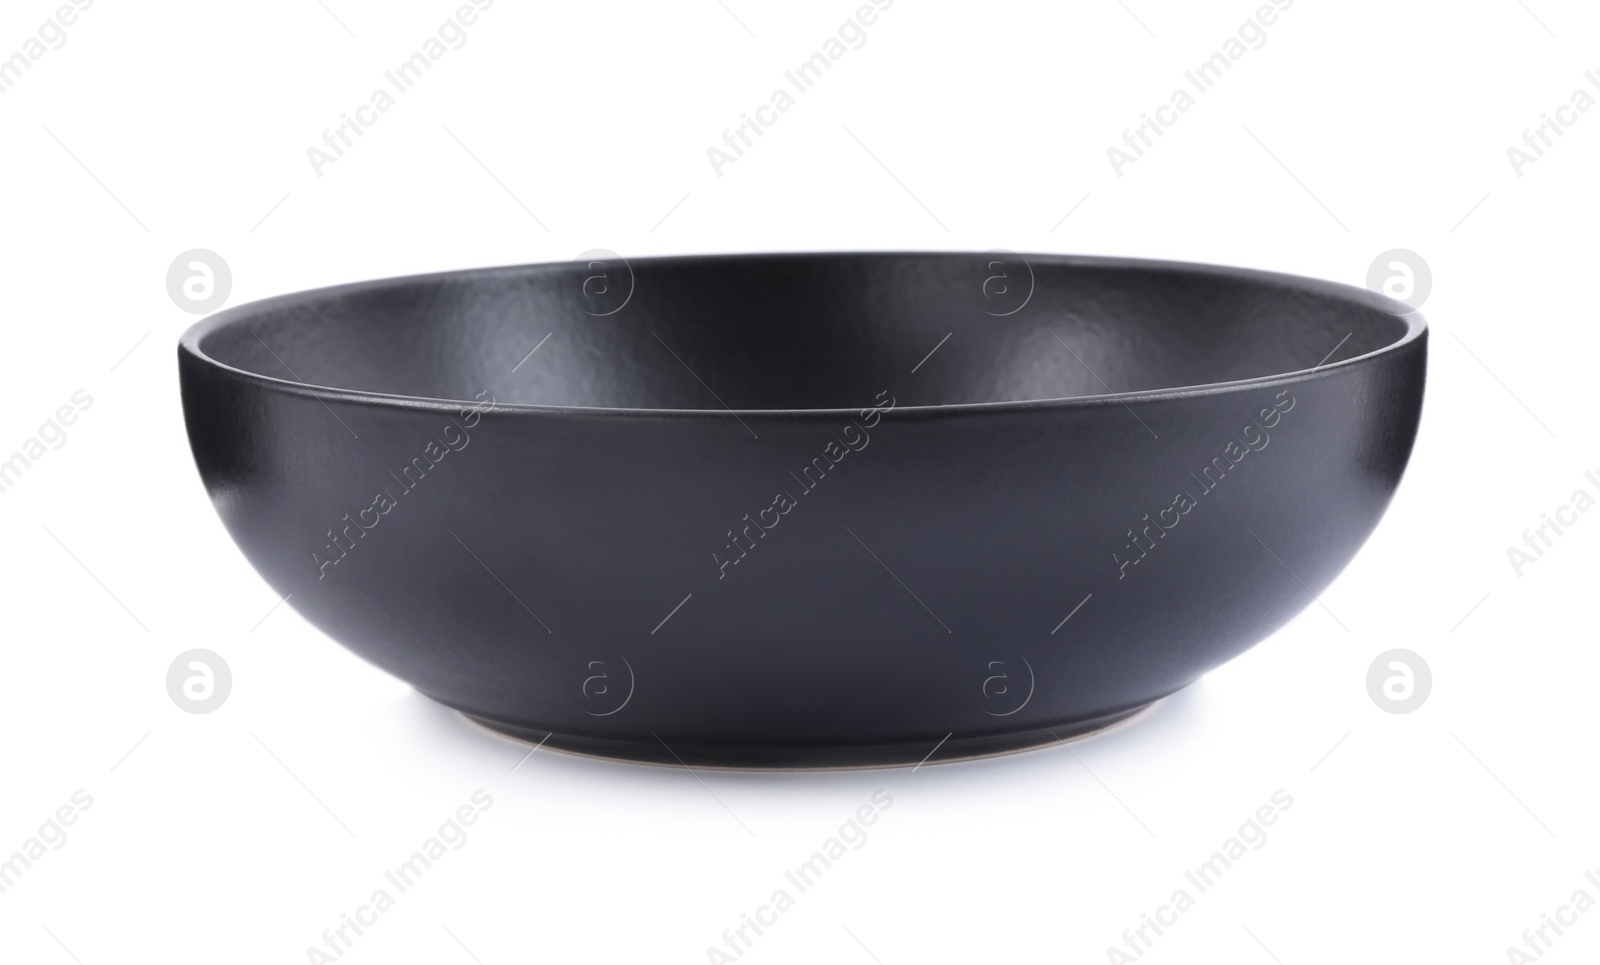 Photo of Empty black ceramic bowl isolated on white